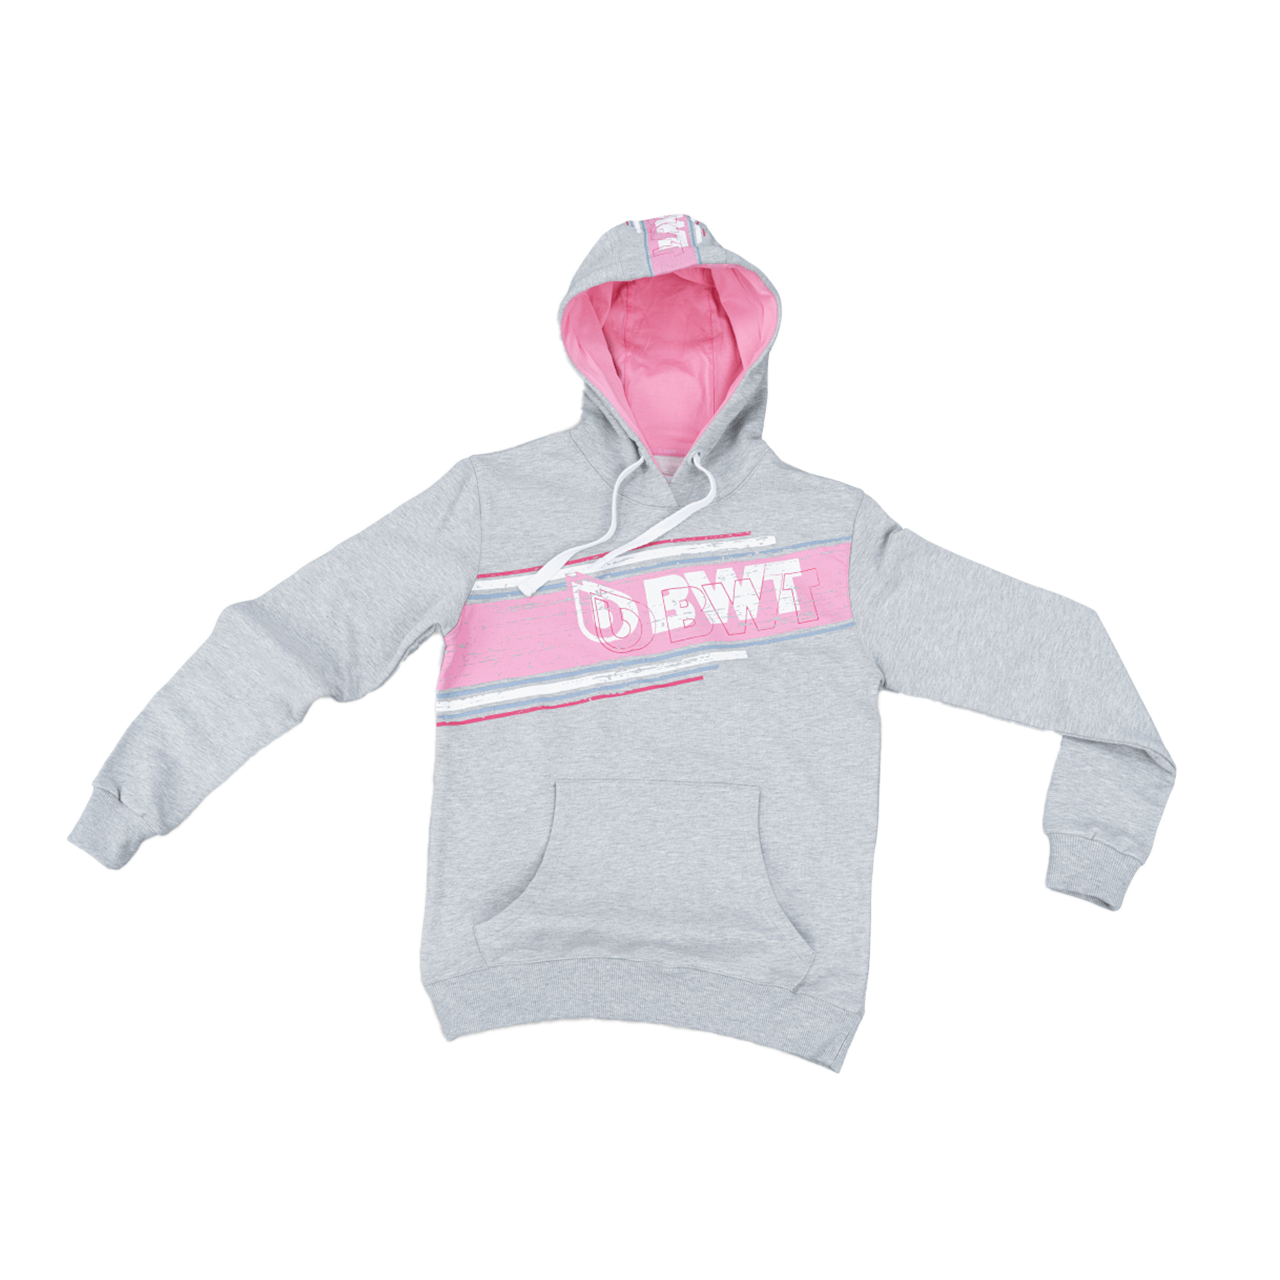 BWT Lifestyle Hoodie Herren grau mit weißem BWT Logo auf pinkem Hintergrund